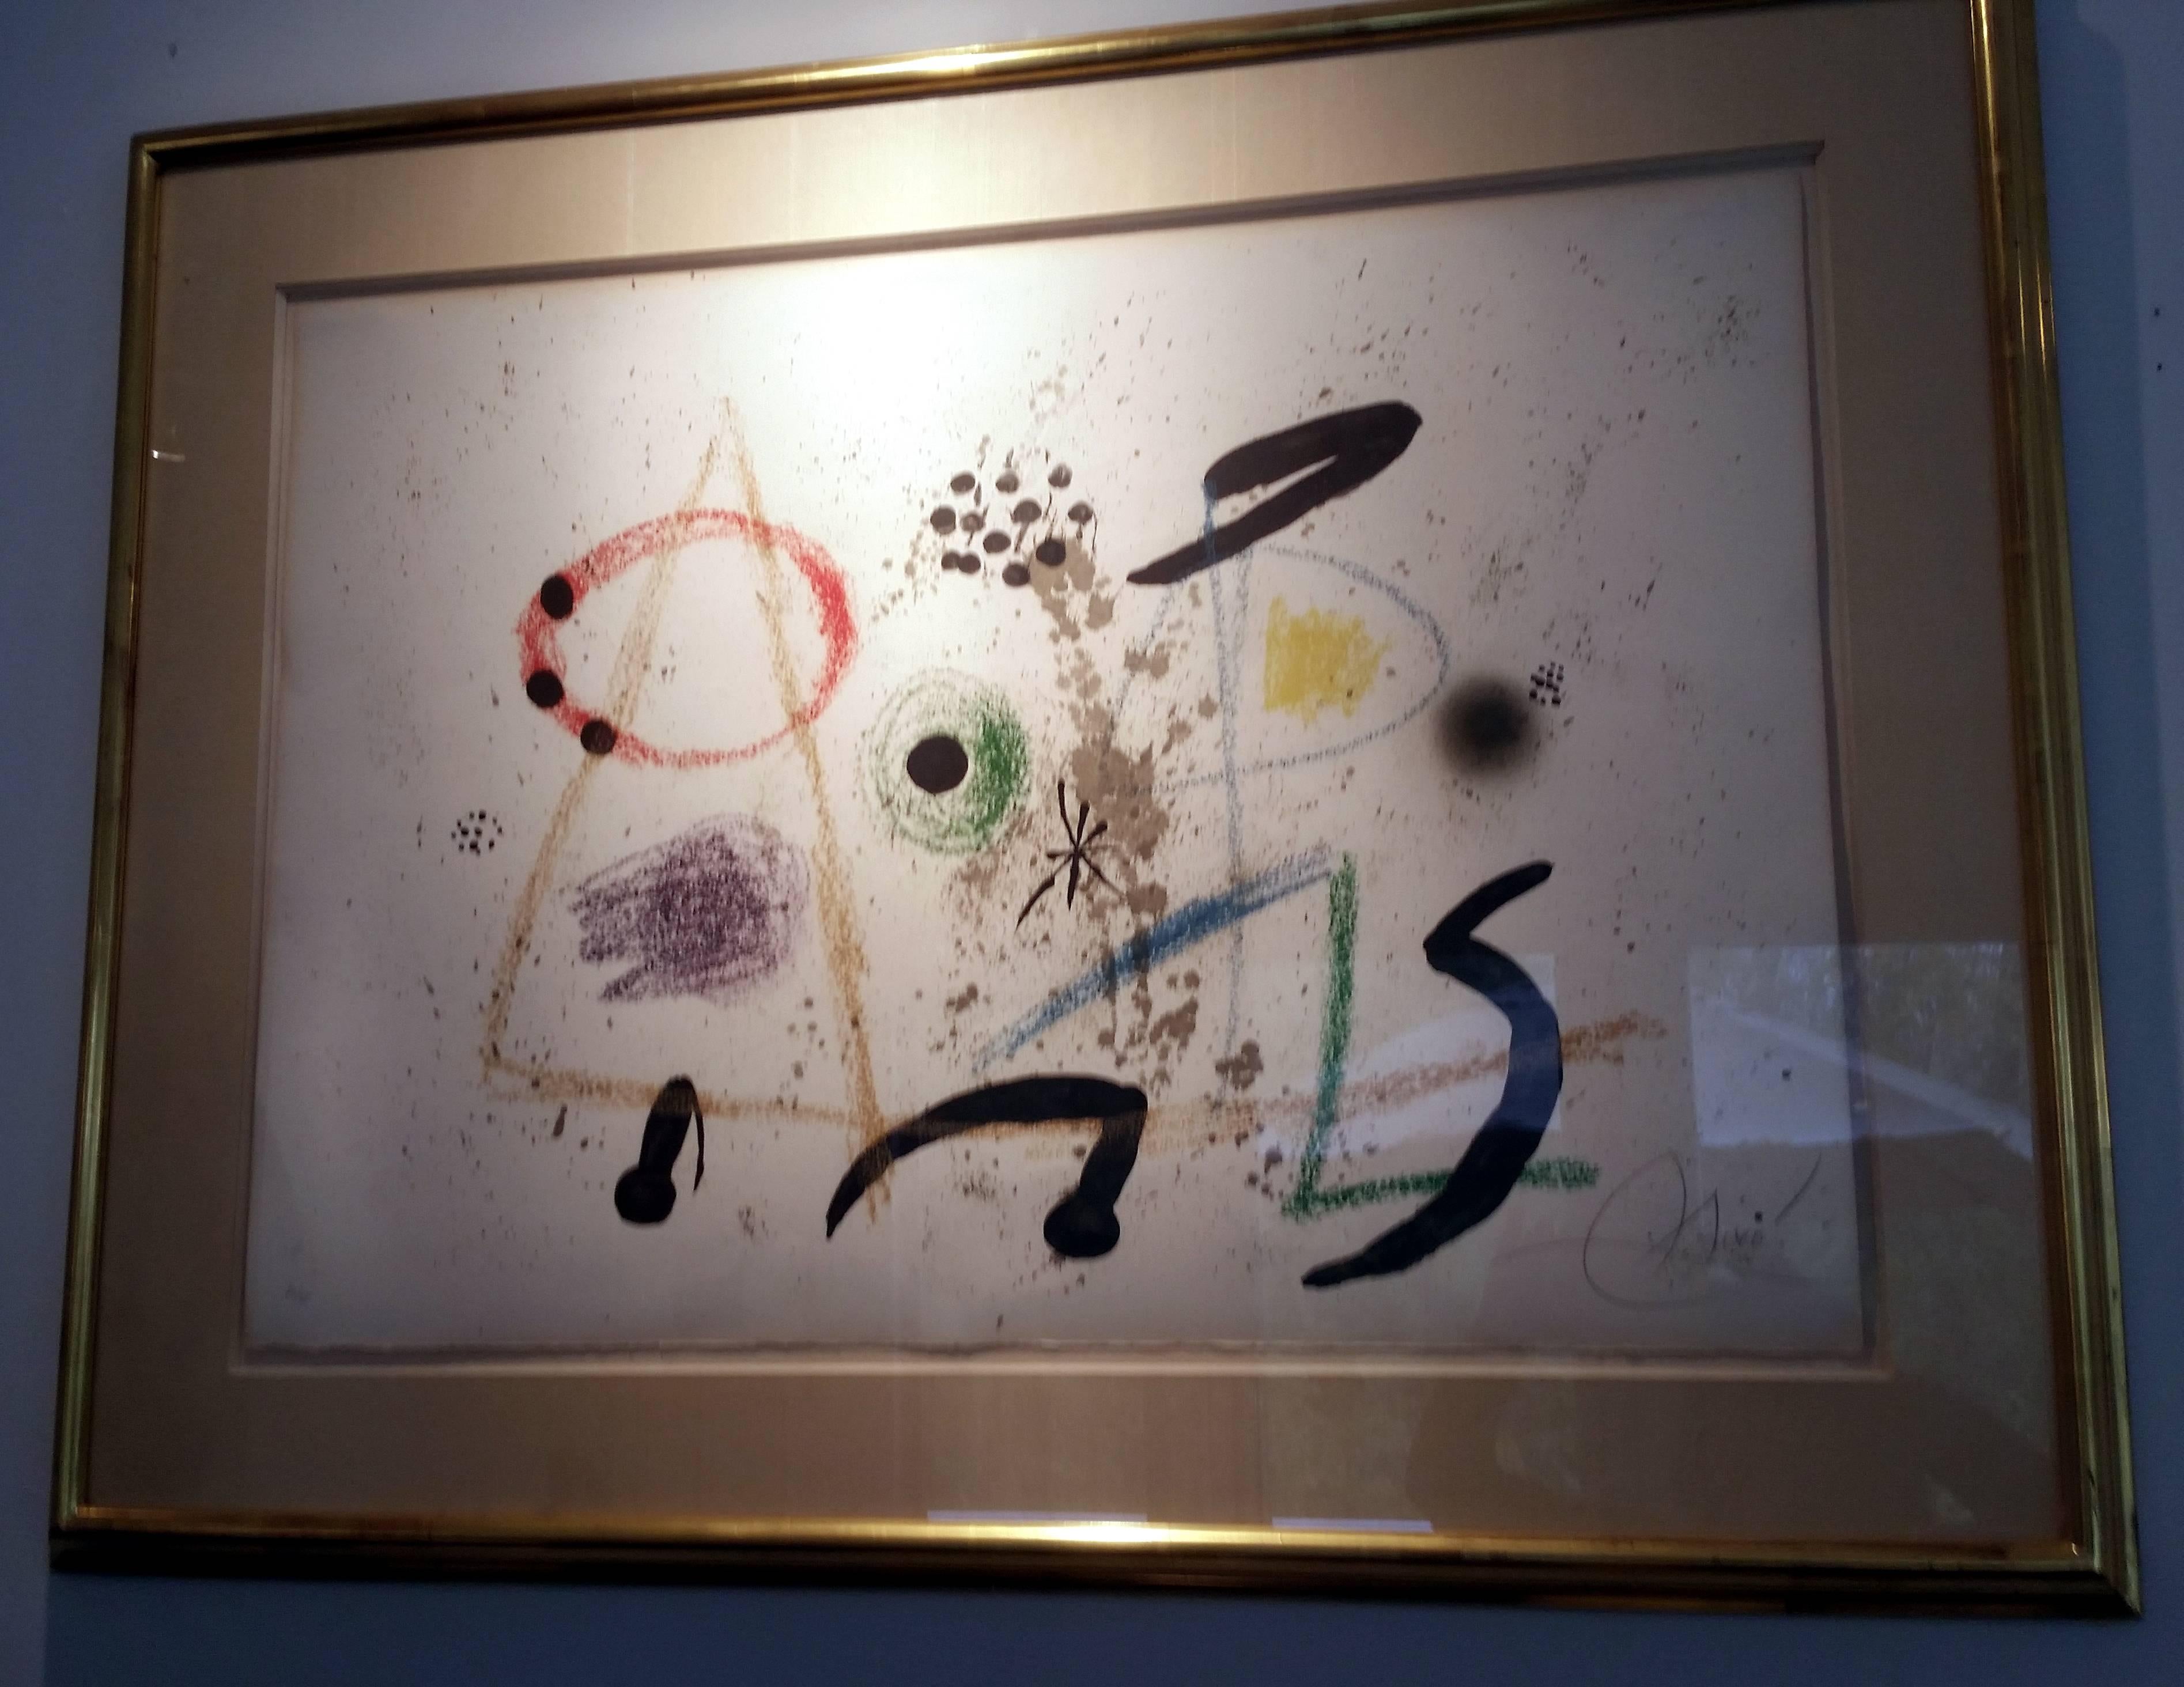 Maraveillas con Variaciones - Surrealist Print by Joan Miró